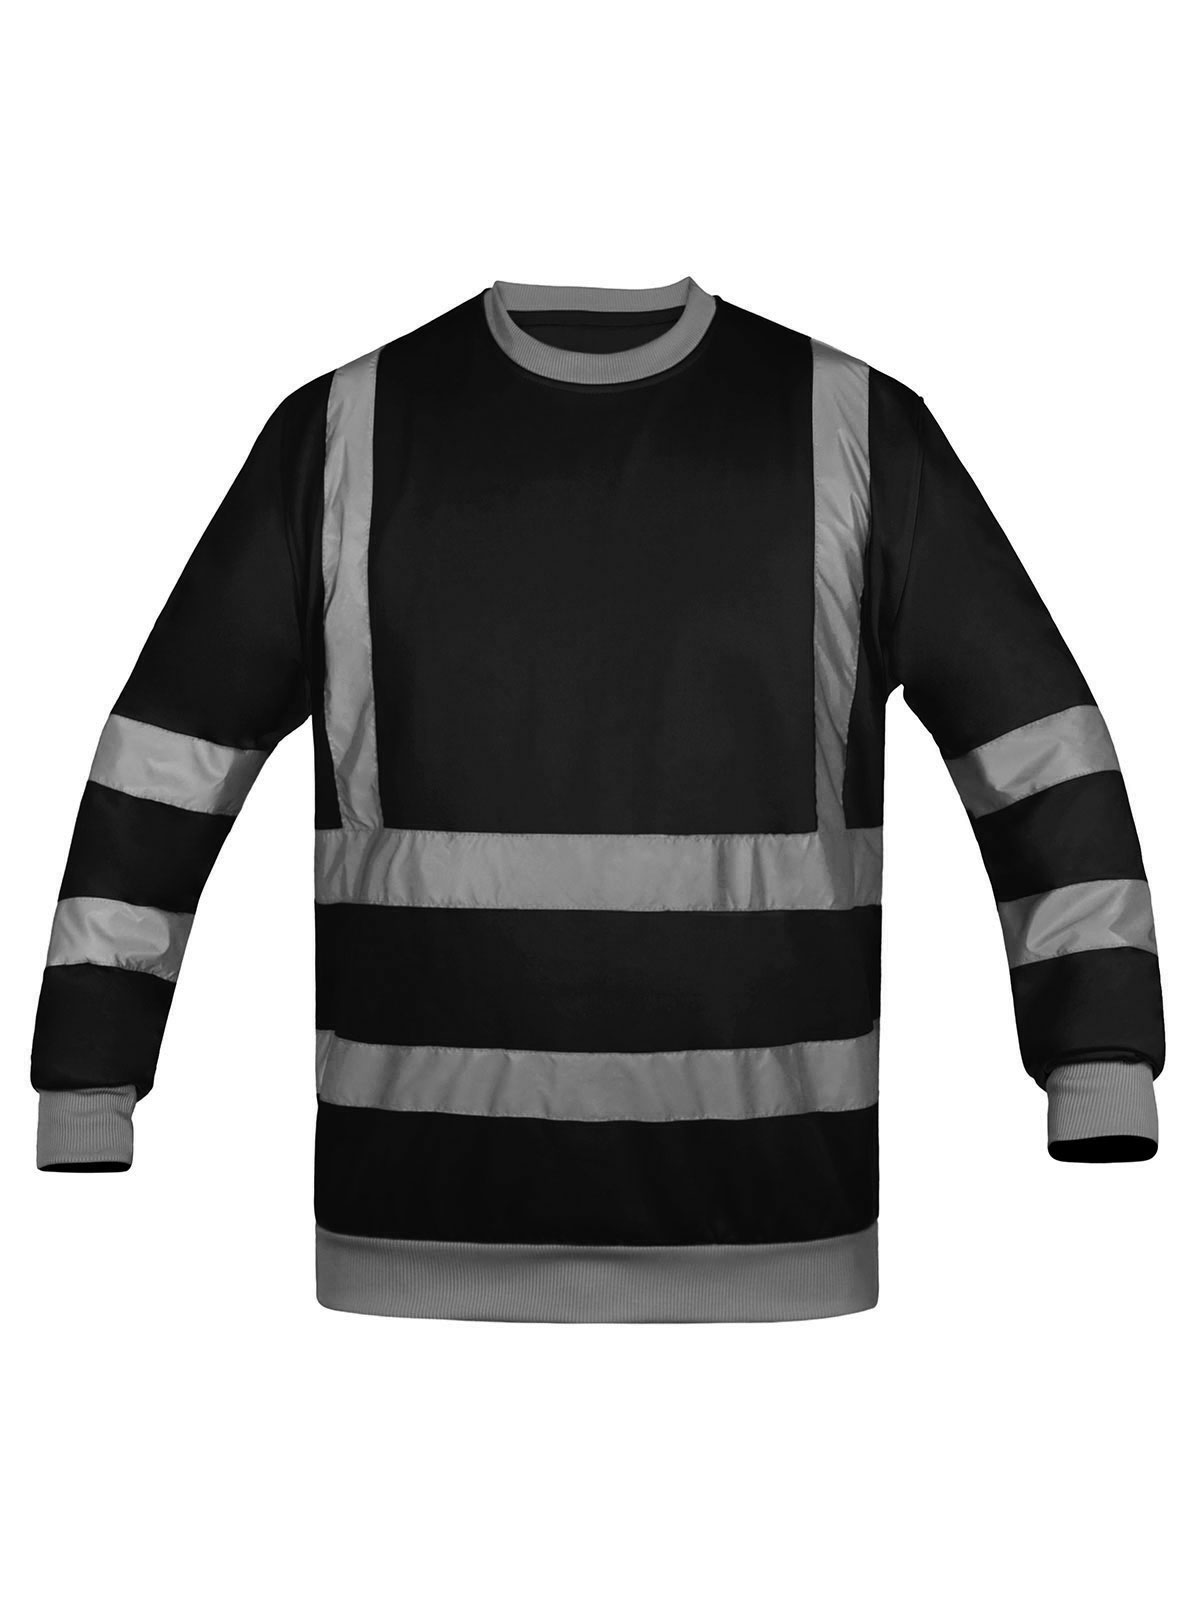 sweatshirt-black.webp